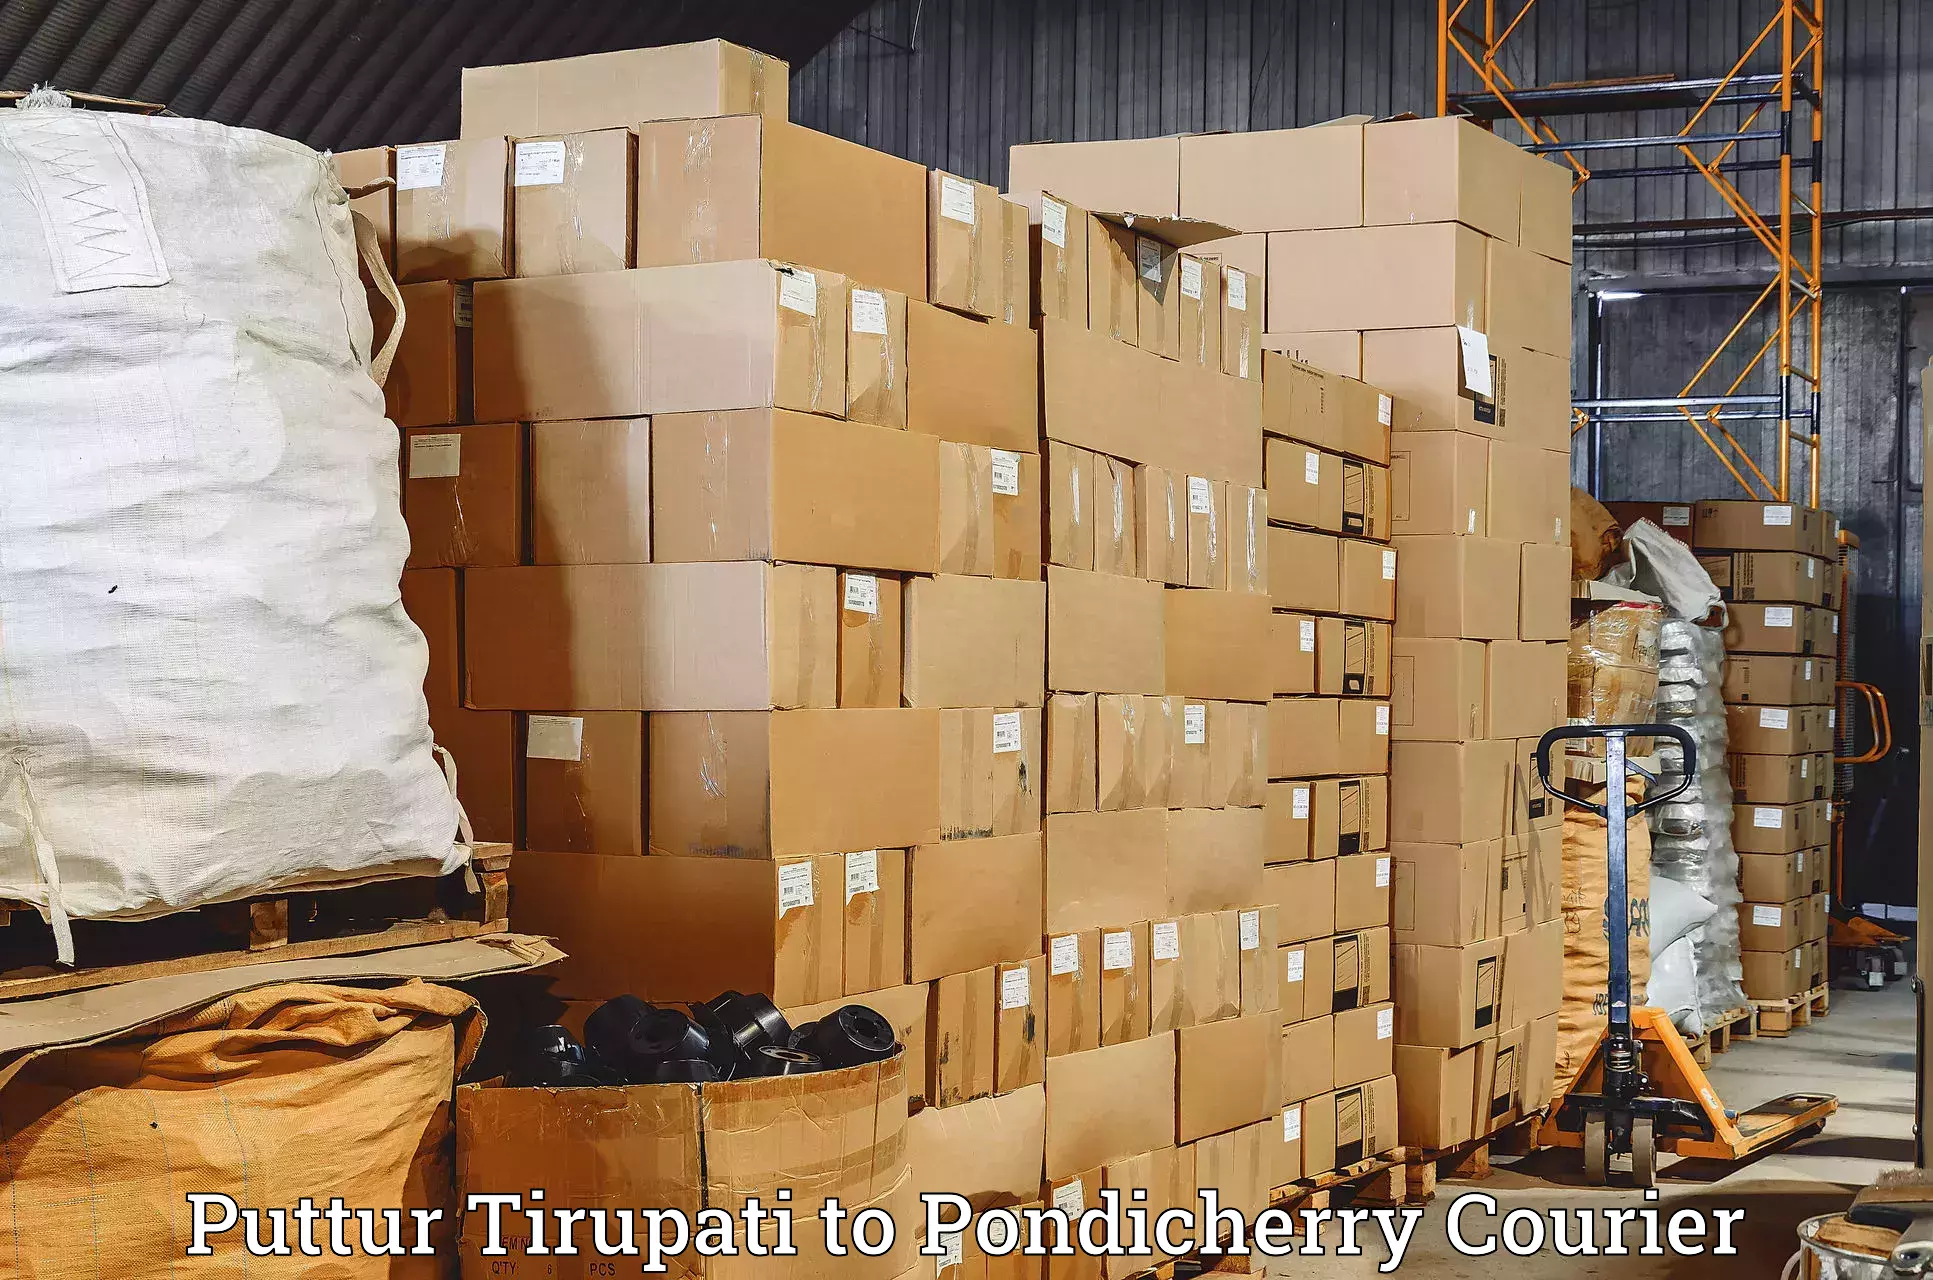 Urban courier service Puttur Tirupati to Pondicherry